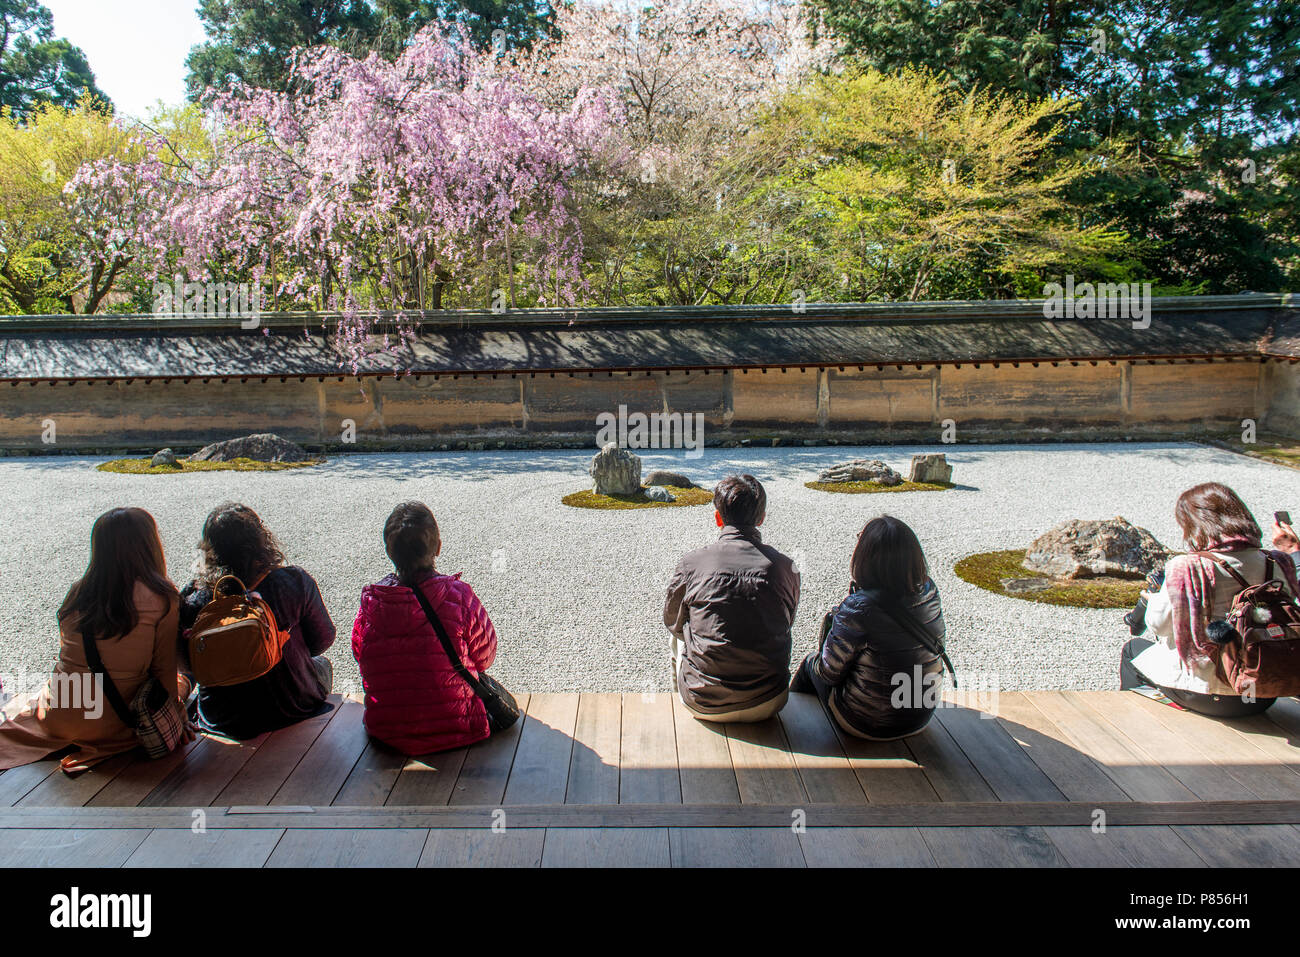 I turisti giapponesi godetevi la tranquillità presso il Tempio di Ryoanji a Kyoto, in Giappone. Questo Zen tempio Buddista è famosa per il suo giardino di roccia. Foto Stock